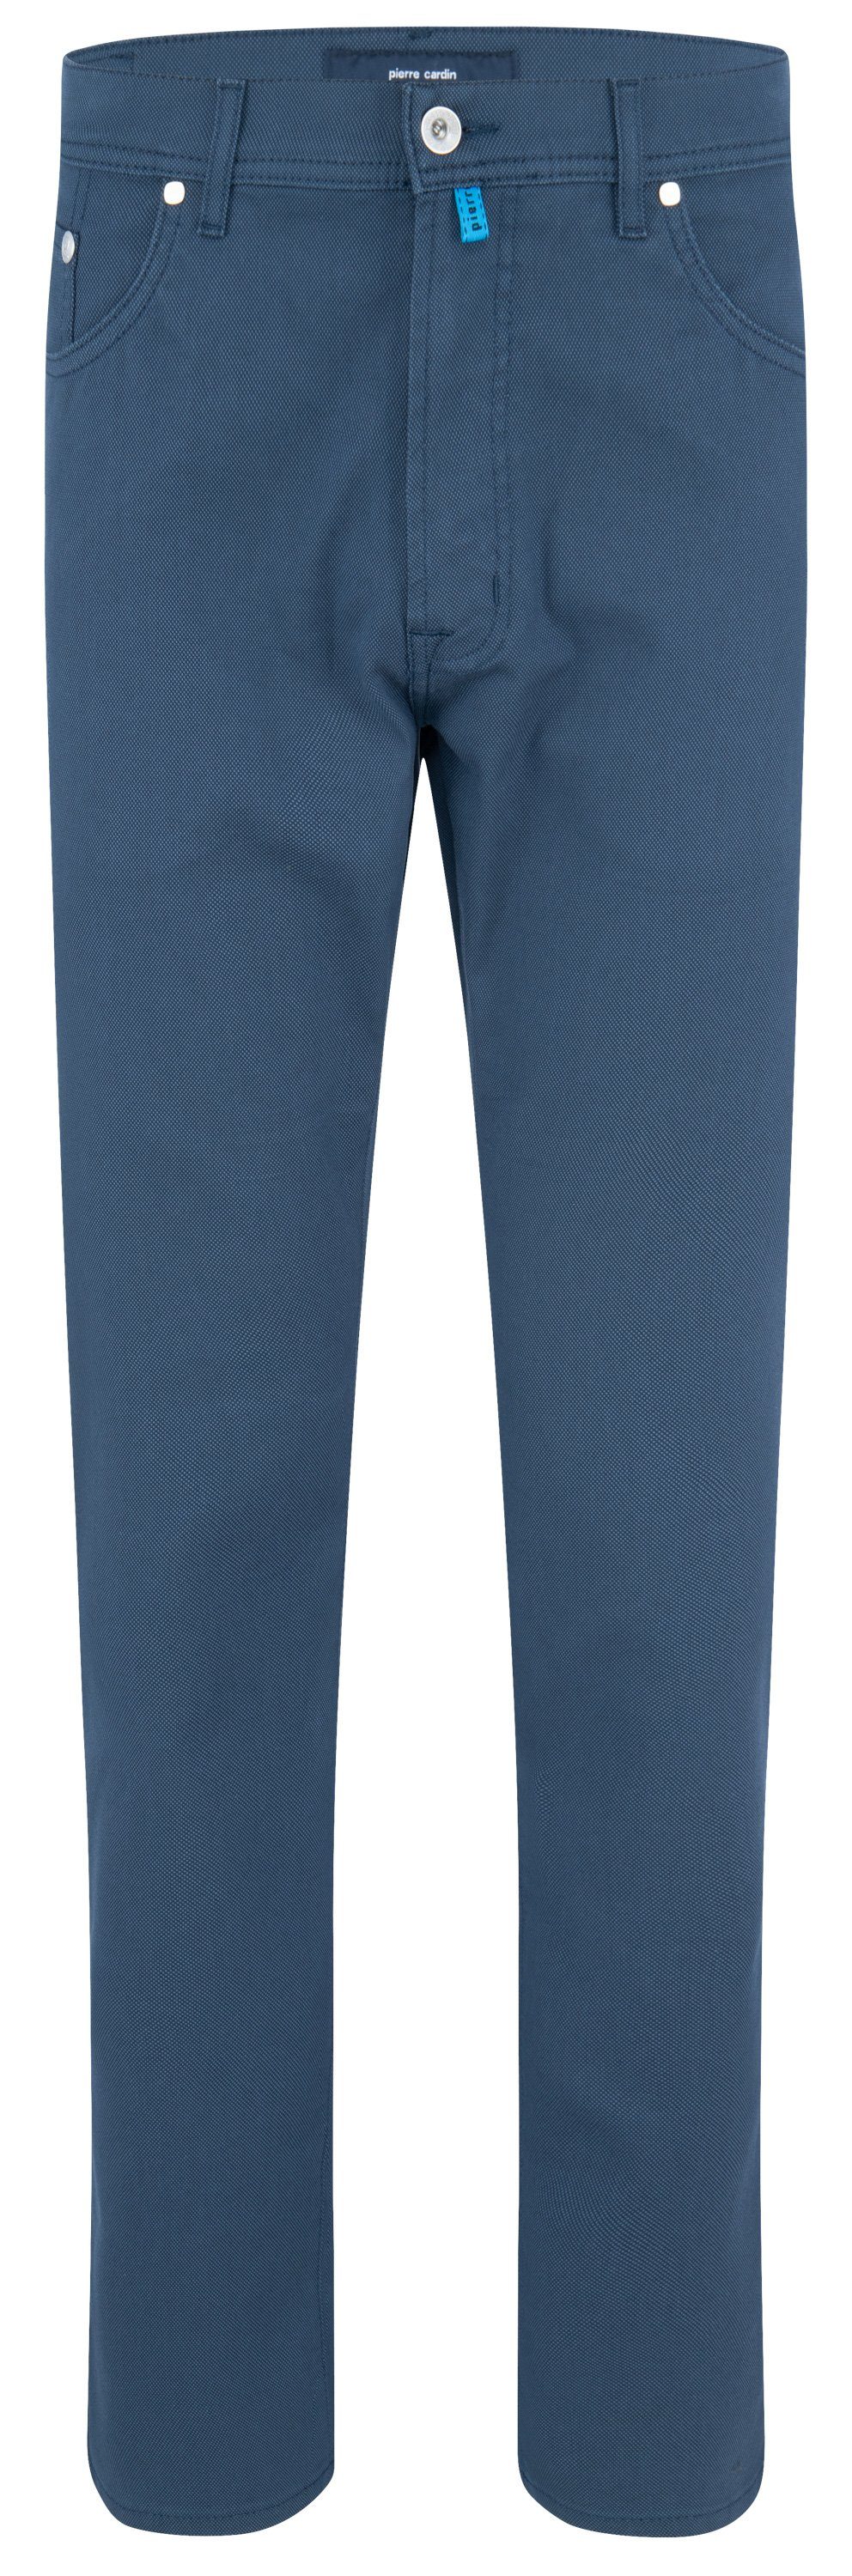 Pierre Cardin 5-Pocket-Jeans PIERRE CARDIN LYON dark denim 30940 1017.6214